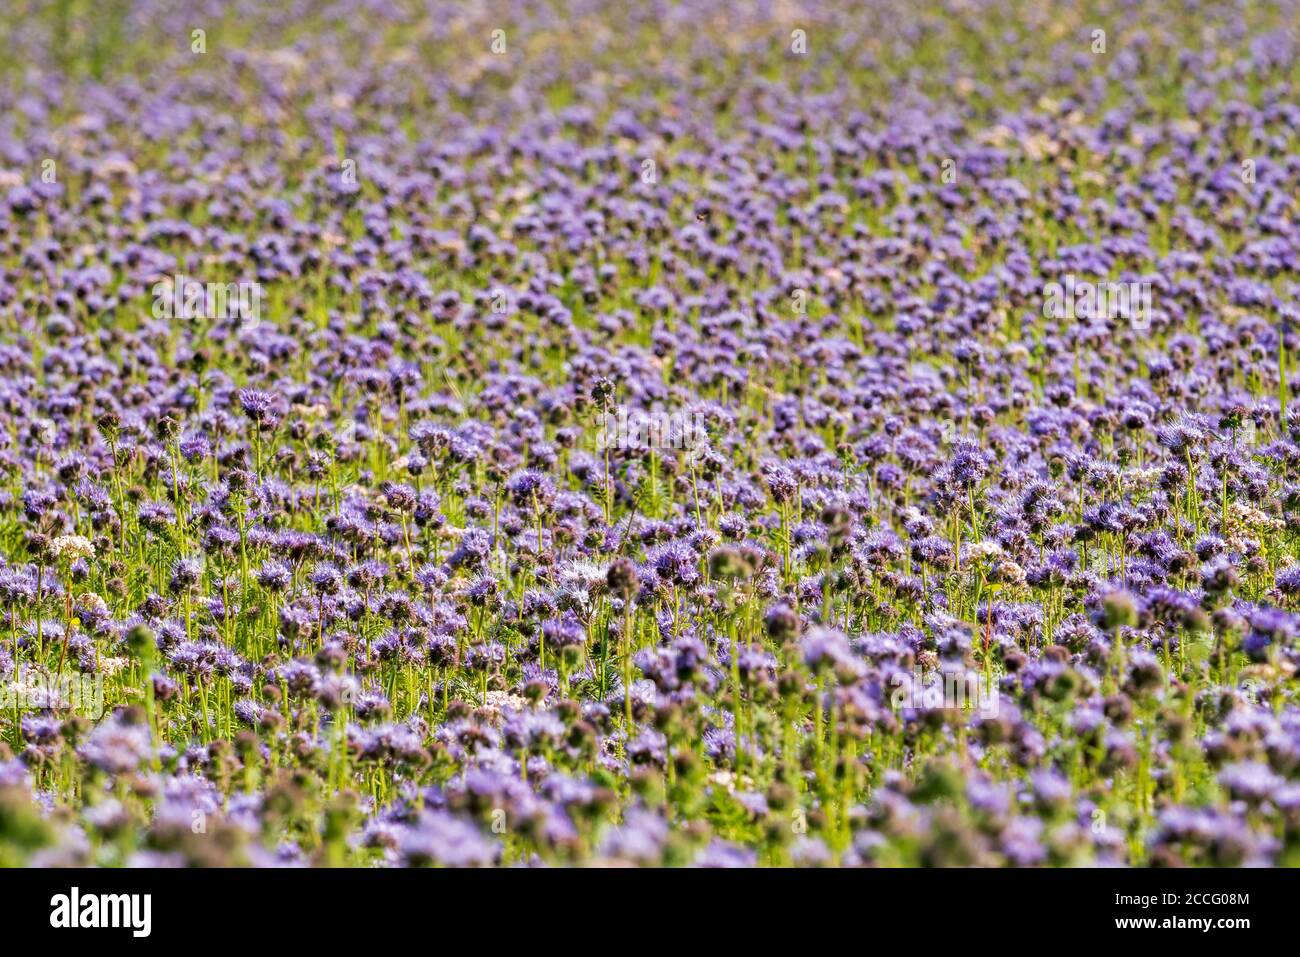 Purple Flowers Long Green Stems Stock Photo by ©sandipruel 233016818